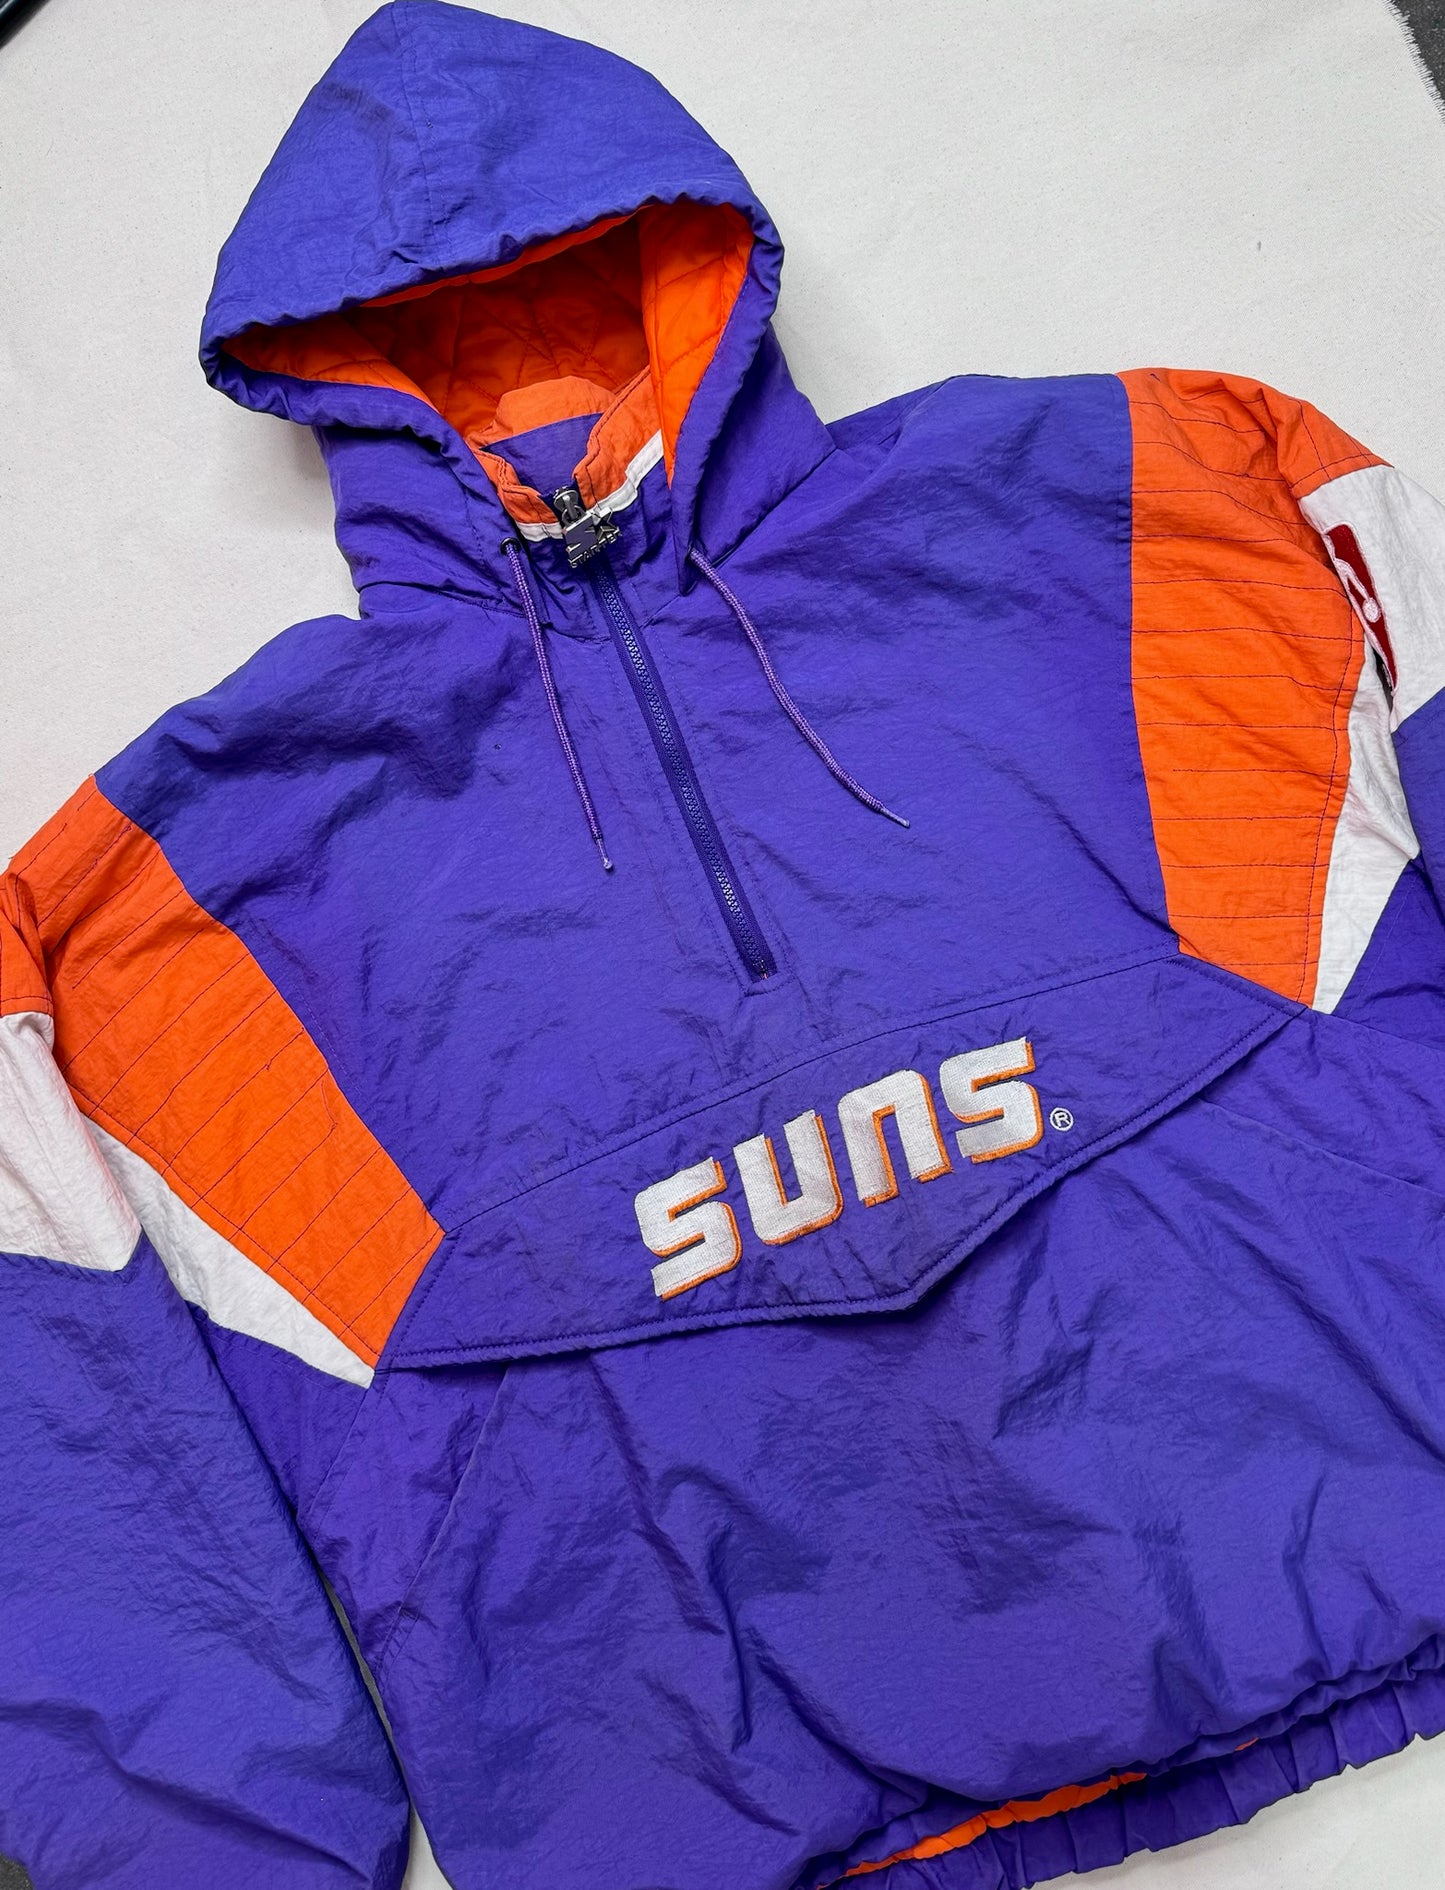 Vintage Phoenix Suns Starter Jacket Size L